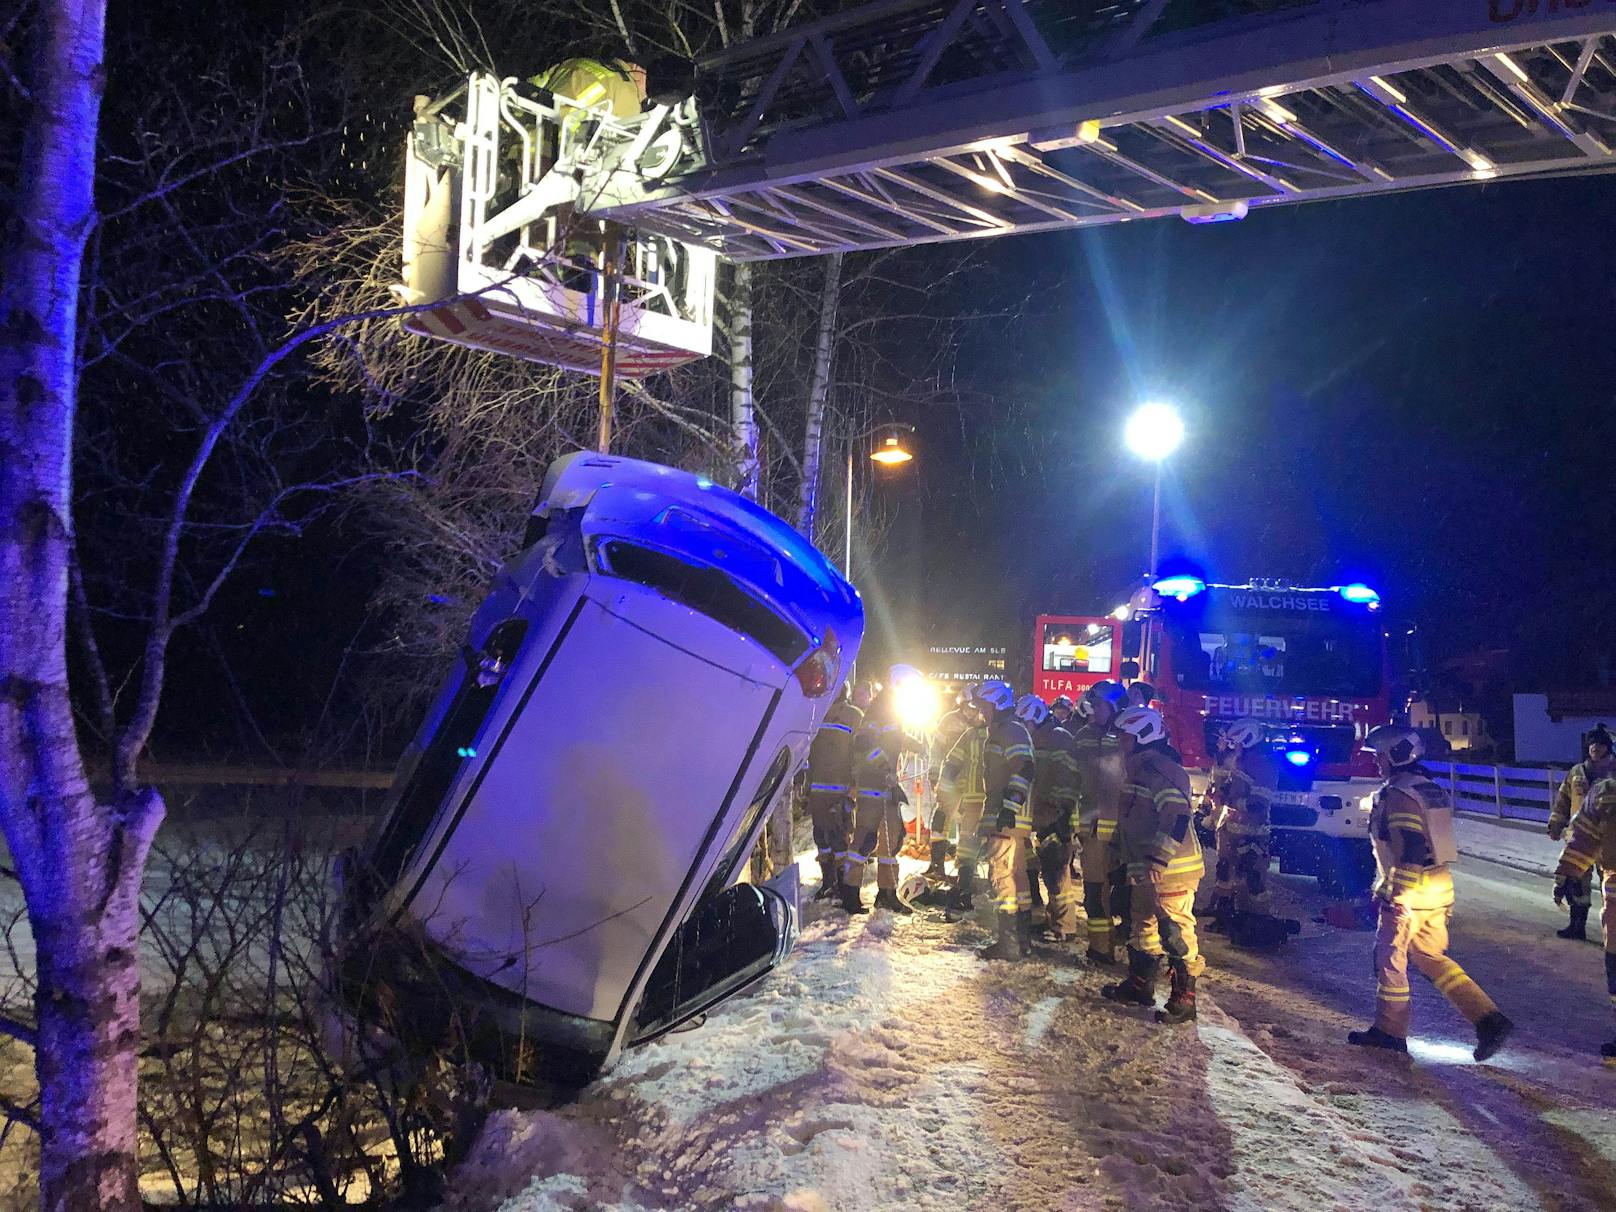 Spektakulärer Unfall in der Nacht auf Samstag im Gemeindegebiet von Walchsee. Ein Seat-Lenker kam von der Straße ab und stürzte in einen See. 